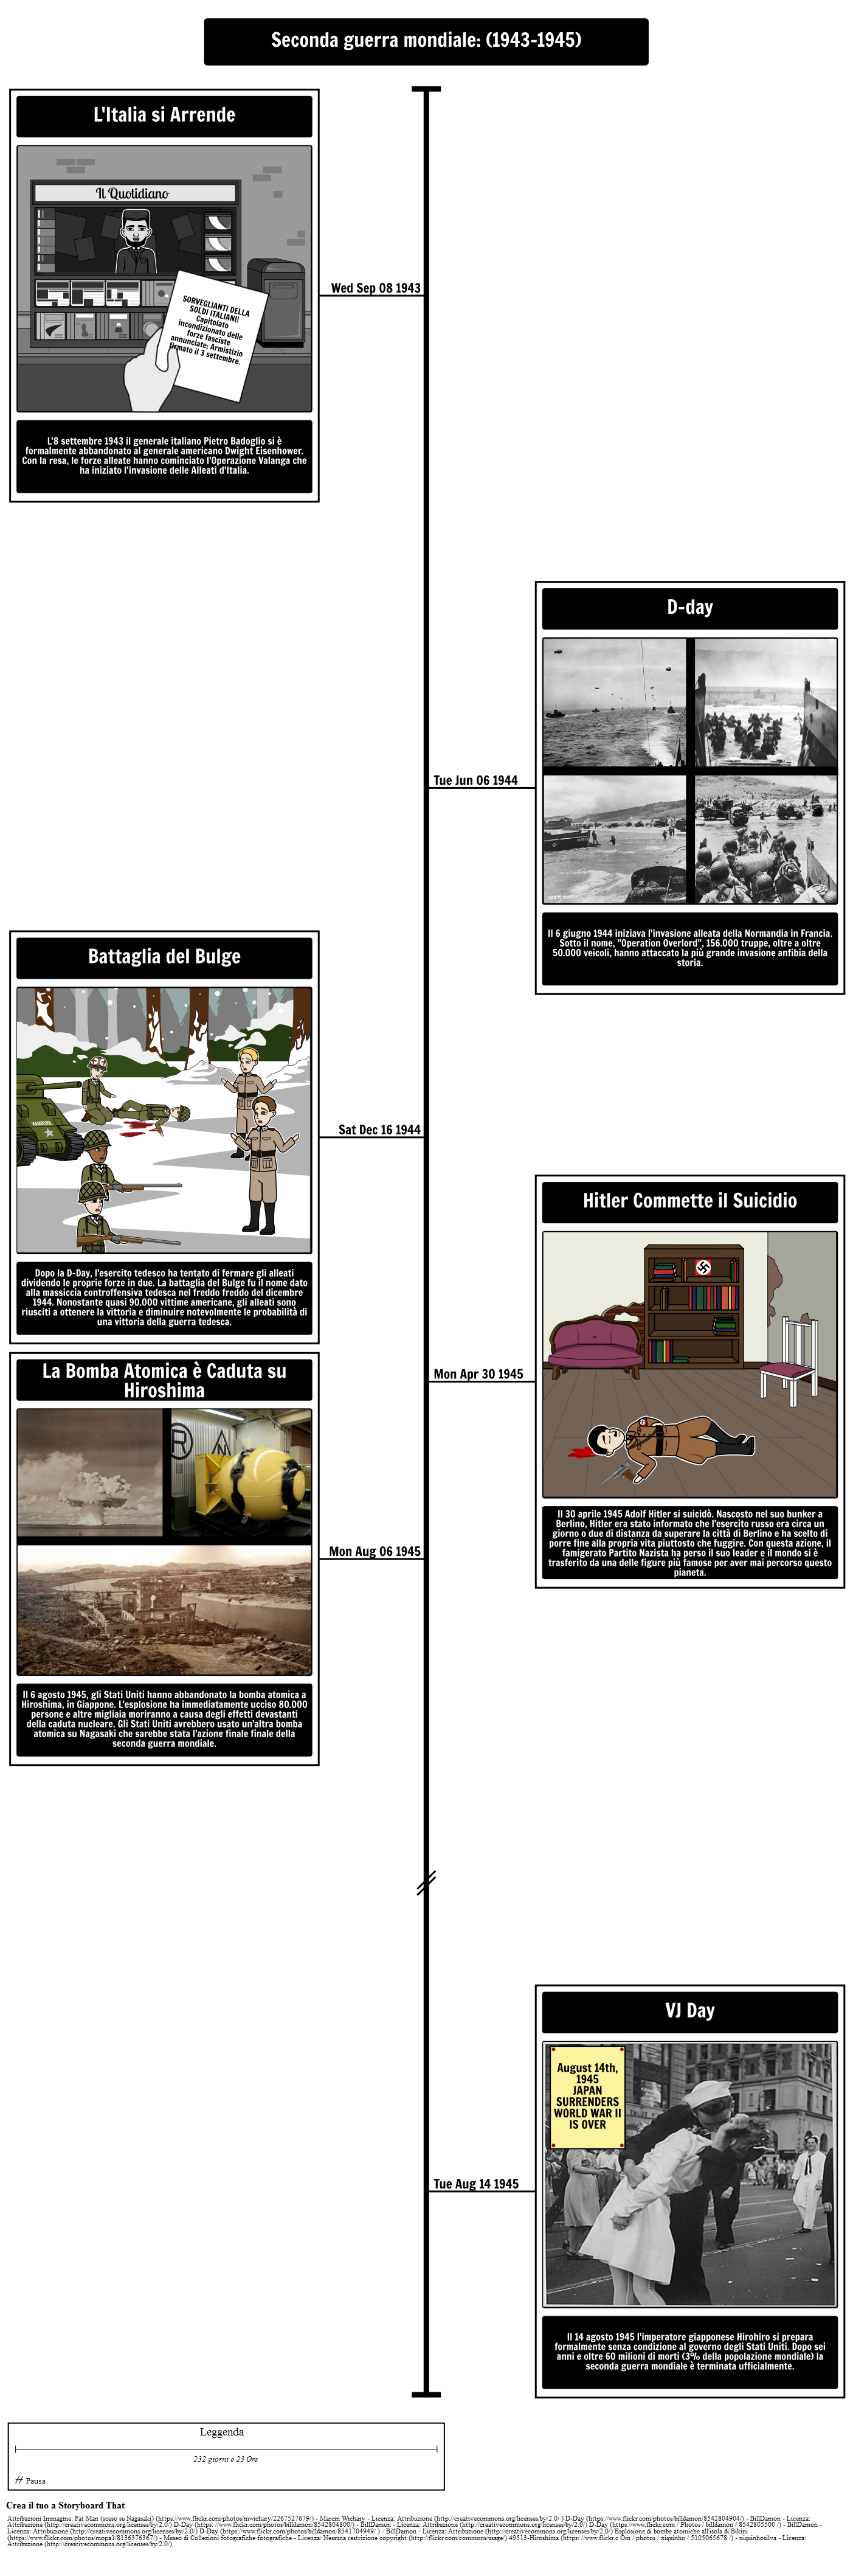 Timeline della seconda guerra mondiale (1943-1945)